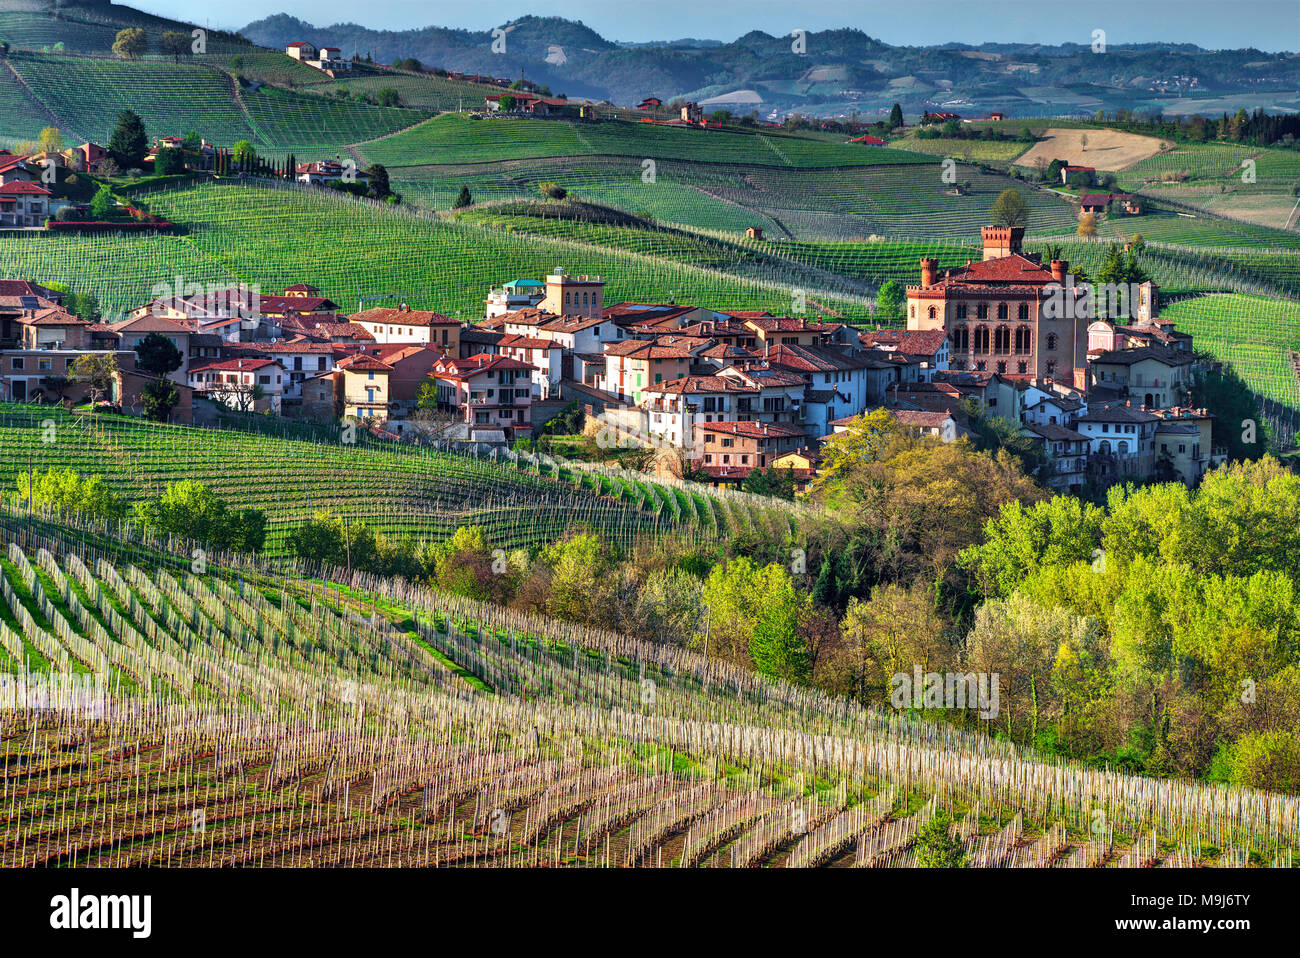 La ville de Barolo, avec le château Falletti, parmi les vignes, au centre de la zone de l'homonyme vin. Unesco world heritage site. Banque D'Images